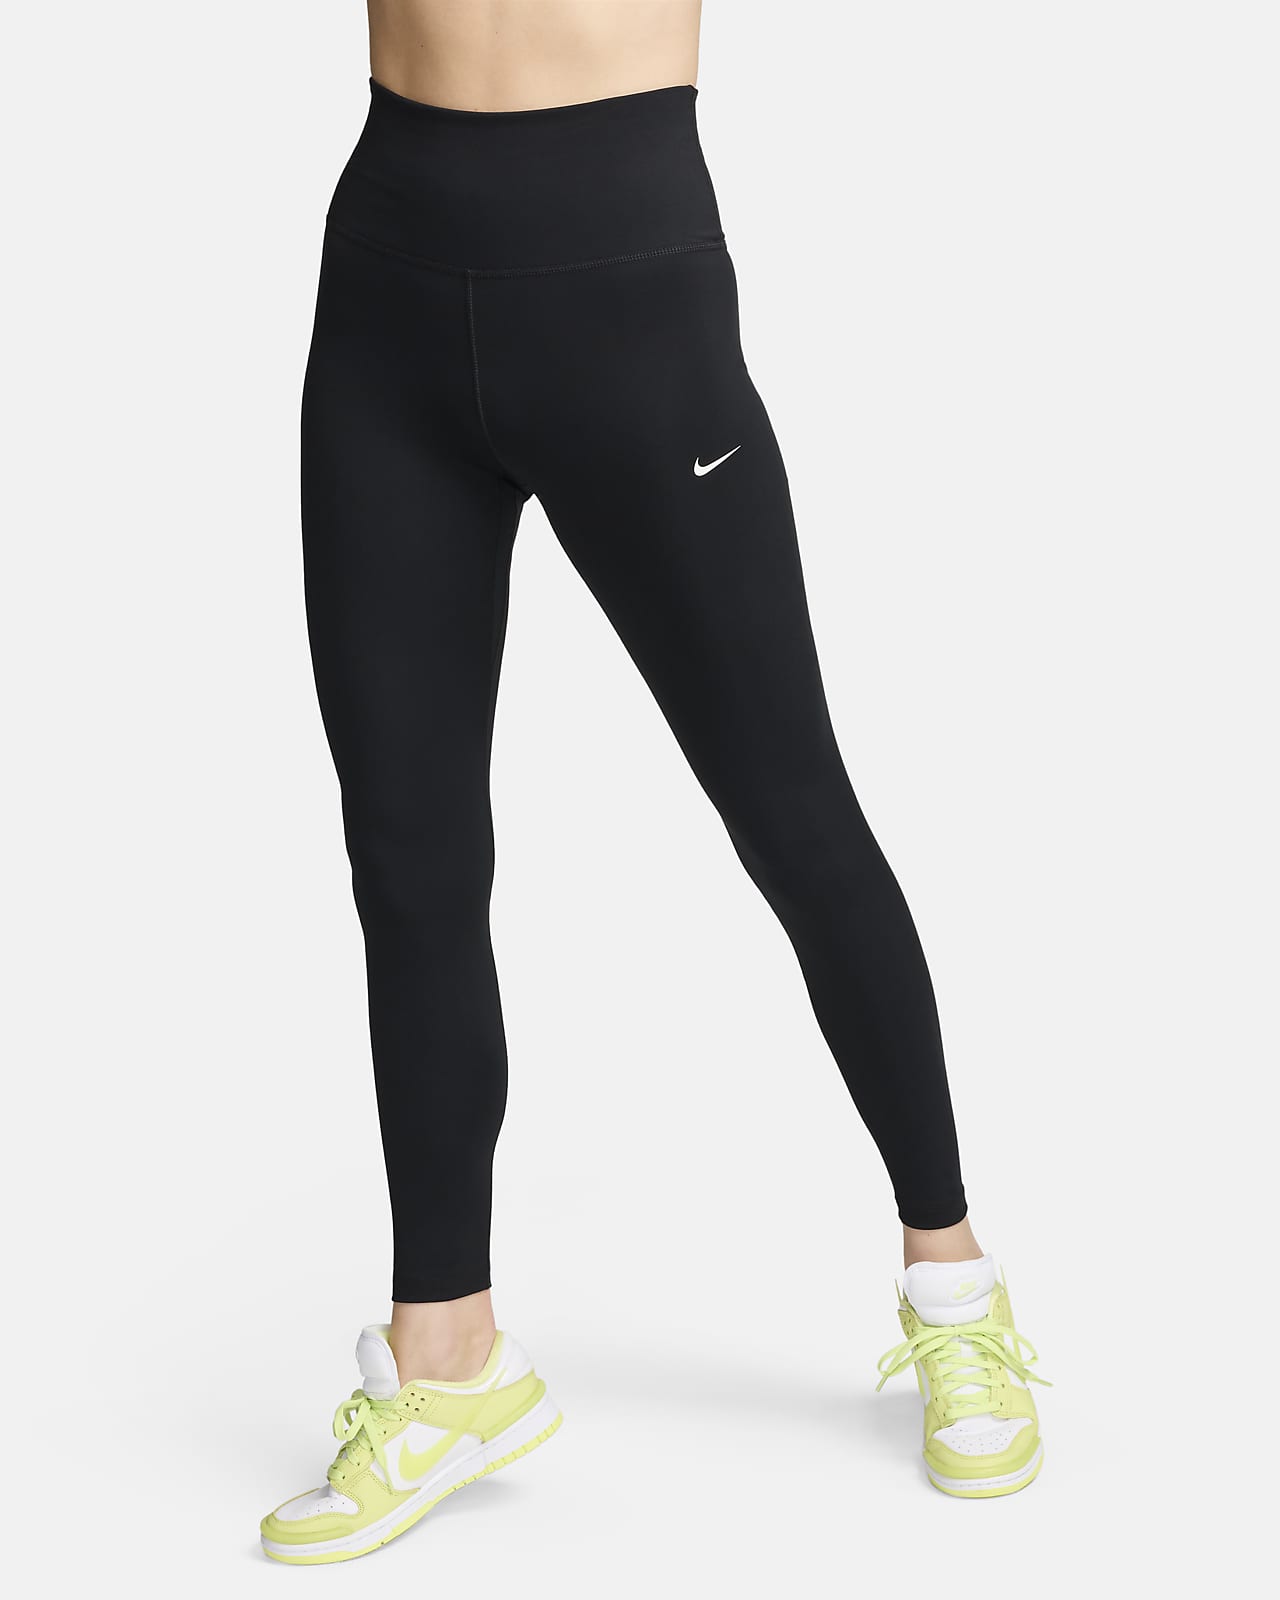 Γυναικείο ψηλόμεσο κολάν με κανονικό μήκος Nike One